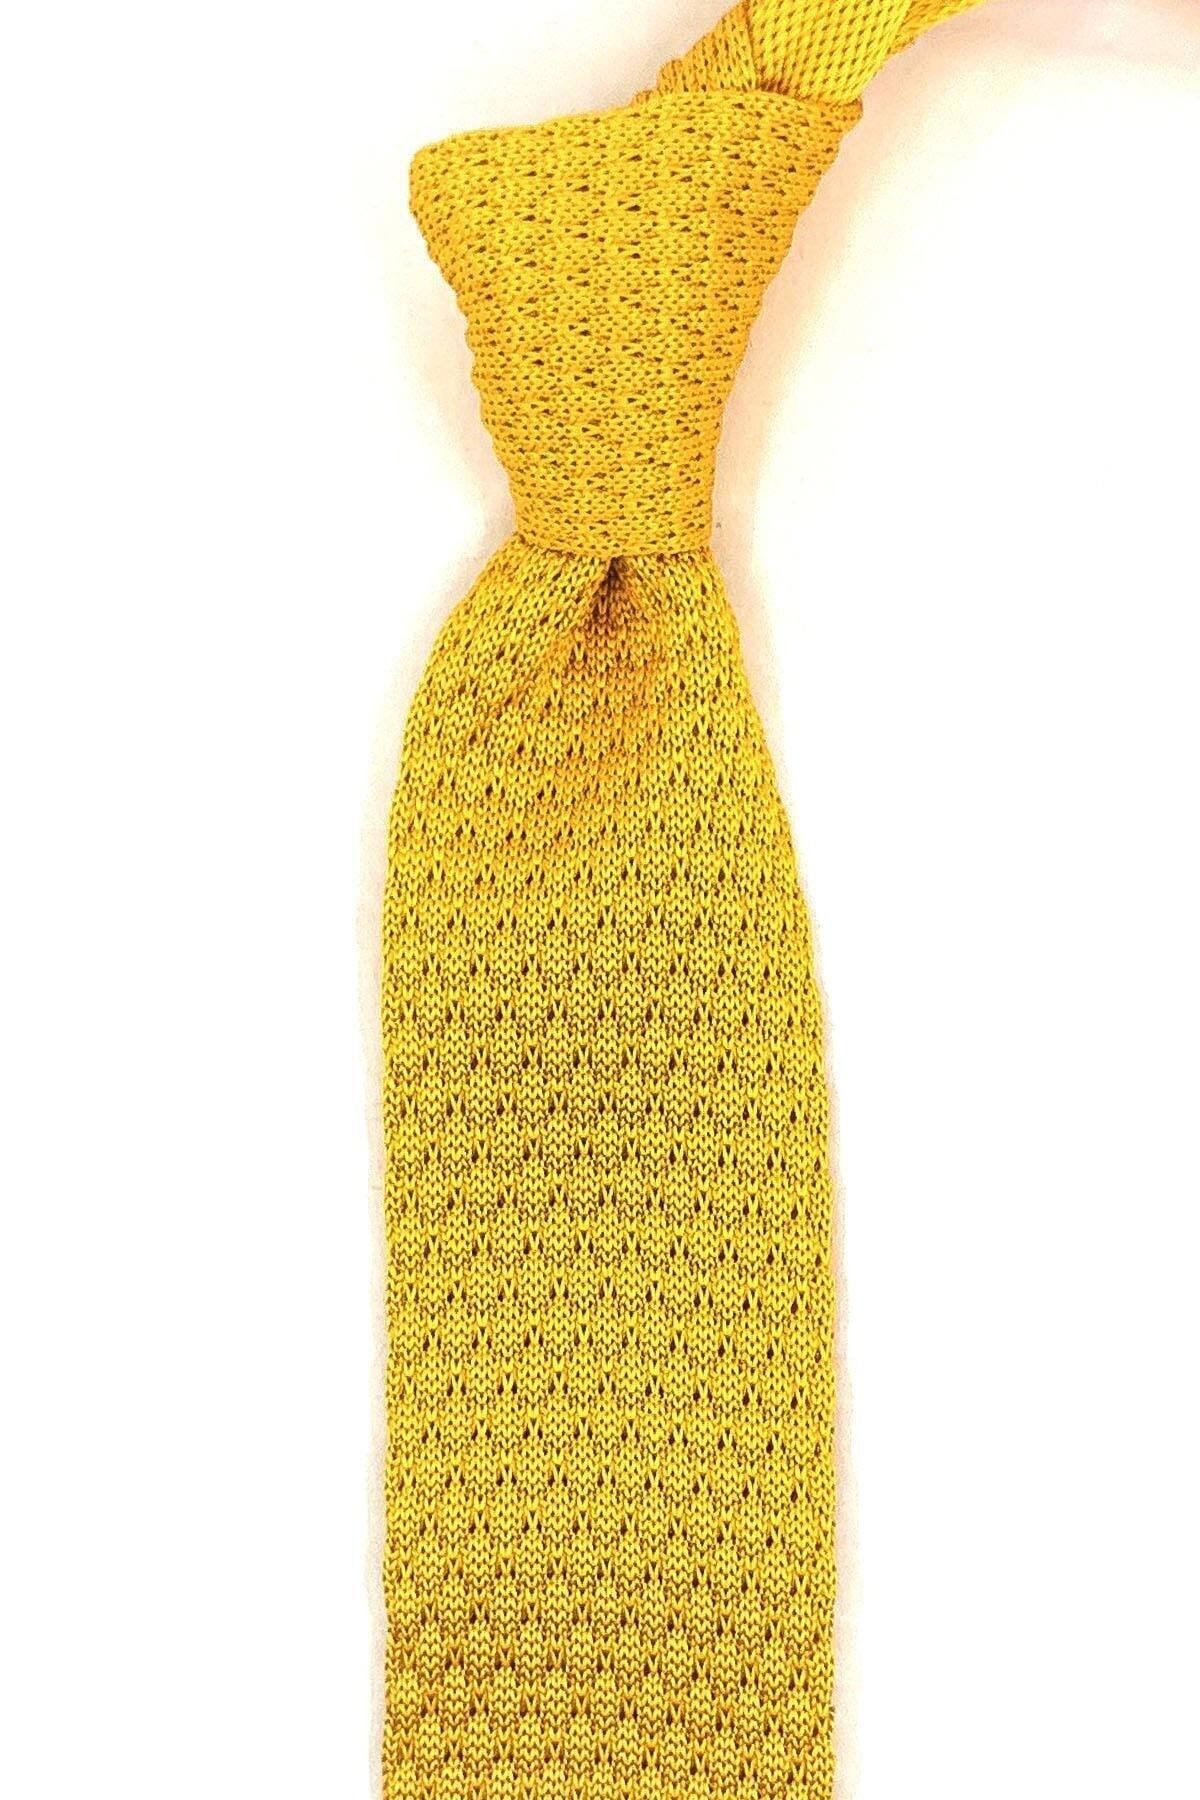 Kravatkolik Sarı Düz Örgü Kravat ÖR8330